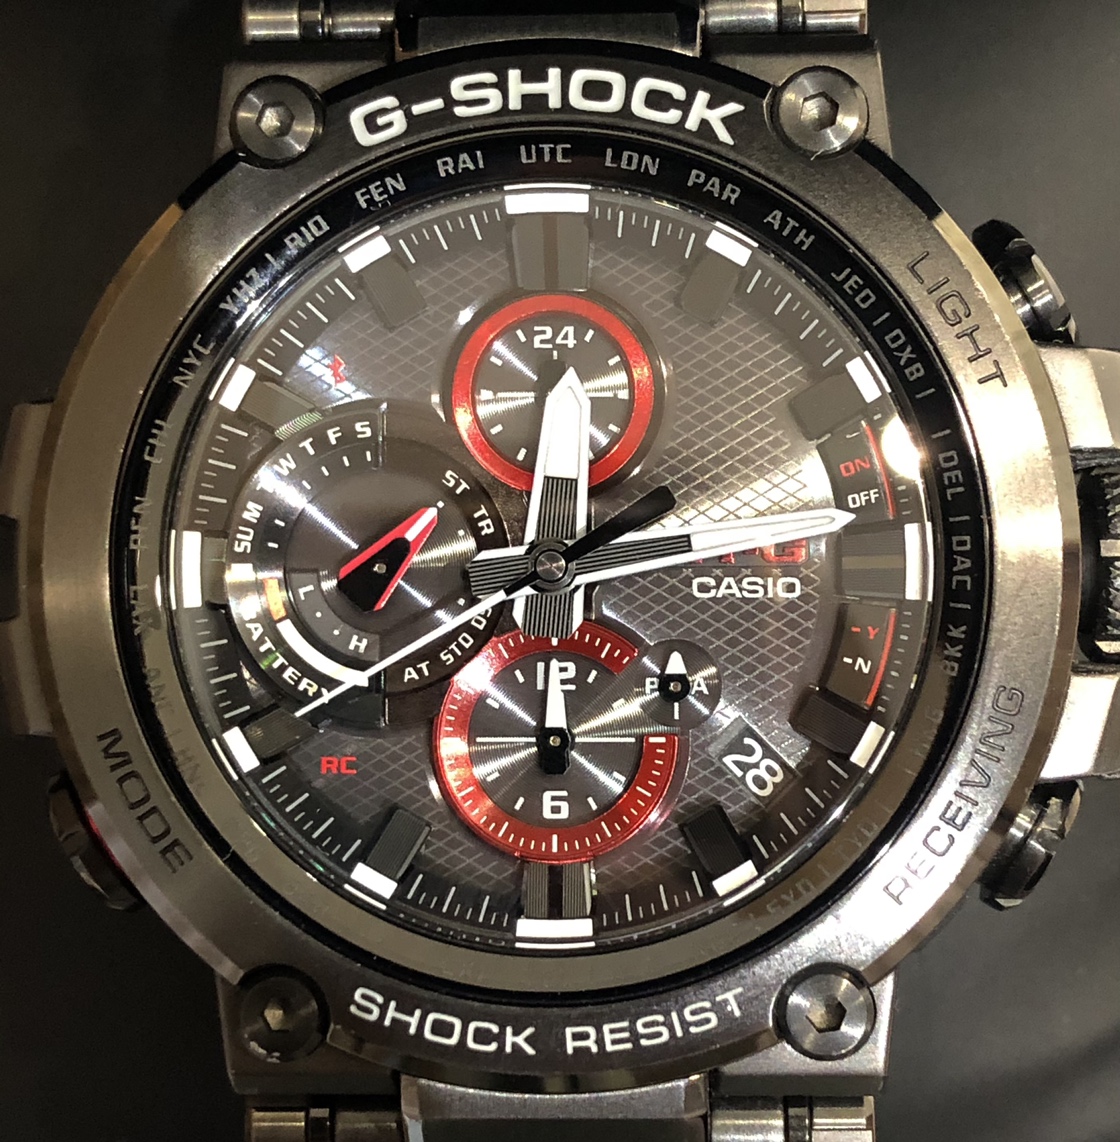 G-SHOCKのMTG-B1000B-1AJF MT-G Bluetooth搭載 電波ソーラー 時計の買取実績です。